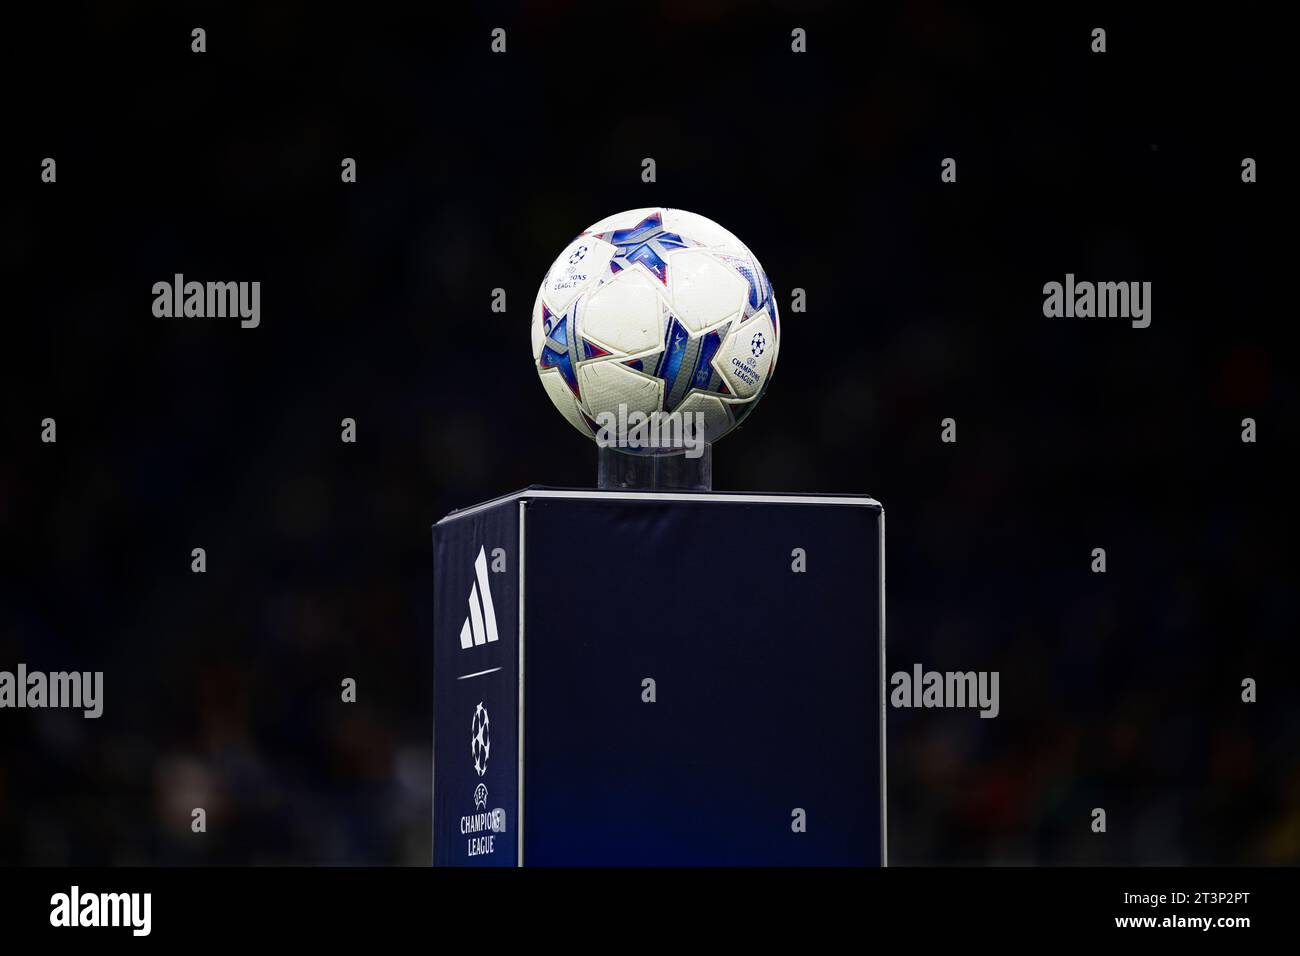 Il pallone ufficiale di Adidas "finale 23" Champions League è visibile su una base prima della partita di UEFA Champions League tra FC Internazionale e RB Salzburg. Foto Stock